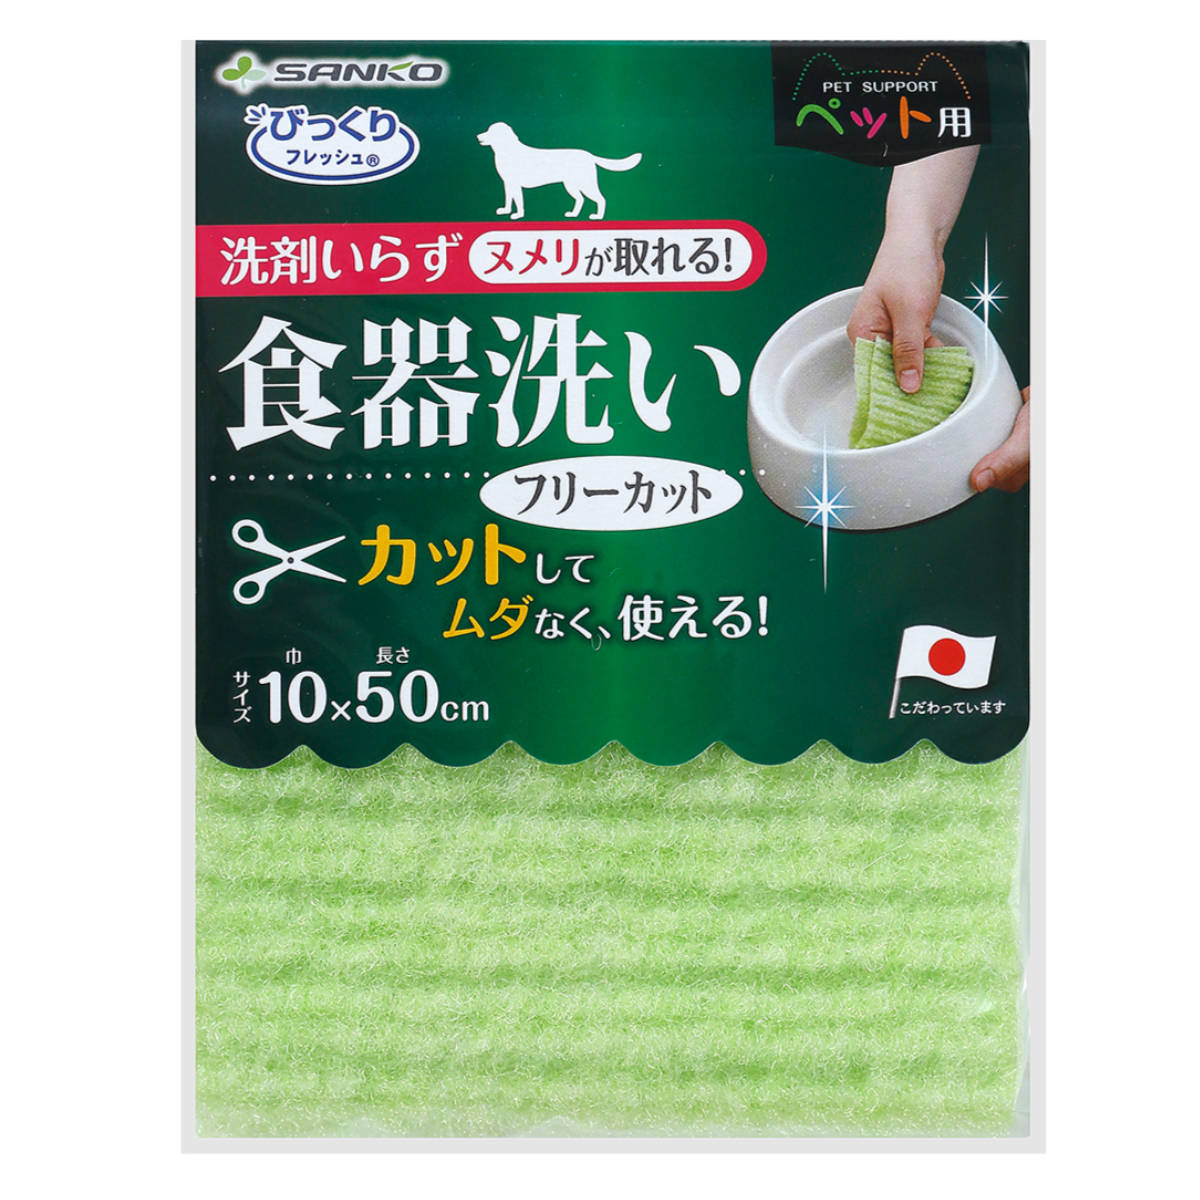 サイズ約 巾10×長さ50（cm）内容量1個材質不織布：ポリエステル生産国日本製耐熱温度80度区分返品・キャンセル区分（小型商品）ギフトラッピングページを見る●ペットの食器特有のヌメリが落とせます。●洗剤を使わないので食器に臭いも付かずペットにも安心です。●ステンレスやプラスチックを傷付けません。●フリーカットできるので無駄なく使用でき経済的です。おすすめポイント洗剤不要でペットも安心特殊繊維を使用した、ヌメリや汚れを水だけで落とせるペット用食器スポンジです。洗剤を使わず汚れが落とせるので安心してお使いいただけます。カットして無駄なく使えるお好きな大きさにカットしてお使いいただけます。切断面がほつれないので使いやすいです。商品詳細食器を傷付けないポリエステル素材の不織布を使用しており、ステンレスやプラスチックを傷付けません。シリーズ紹介フリーカットメッシュ20枚入り関連キーワード：お掃除クロス 掃除 エサ皿 餌皿 洗浄 カット 不織布 ペット用品 ドッグ いぬ 犬用 キャット ねこ 猫用 掃除用品 清掃用品 お掃除グッズ 便利グッズ 便利 LH12520 関連商品はこちら食器洗い 食器 メッシュ ペット用 犬 猫 328円食器洗い ペット用 食器 20枚入り 犬 猫 448円キッチンスポンジ 洗剤不要 水だけ エコマジッ398円キッチンスポンジ 洗剤不要 水だけ エコマジッ598円スポンジ びっくり水槽クリーナー 水槽 掃除 678円スポンジ びっくり水飲みボトル洗い ロング ペ1,080円スポンジ びっくり水飲みボトル洗い ミニ ペッ825円キッチンスポンジ ネットタイプ ネットスポンジ118円キッチンスポンジ 傷つきにくいコゲとりたわし 198円フードボウル MiyaWan HORO 8002,750円ペットマット ペット用トイレ下敷きマット 犬 2,180円キッチンスポンジ タフポン ソフト イエロー 178円